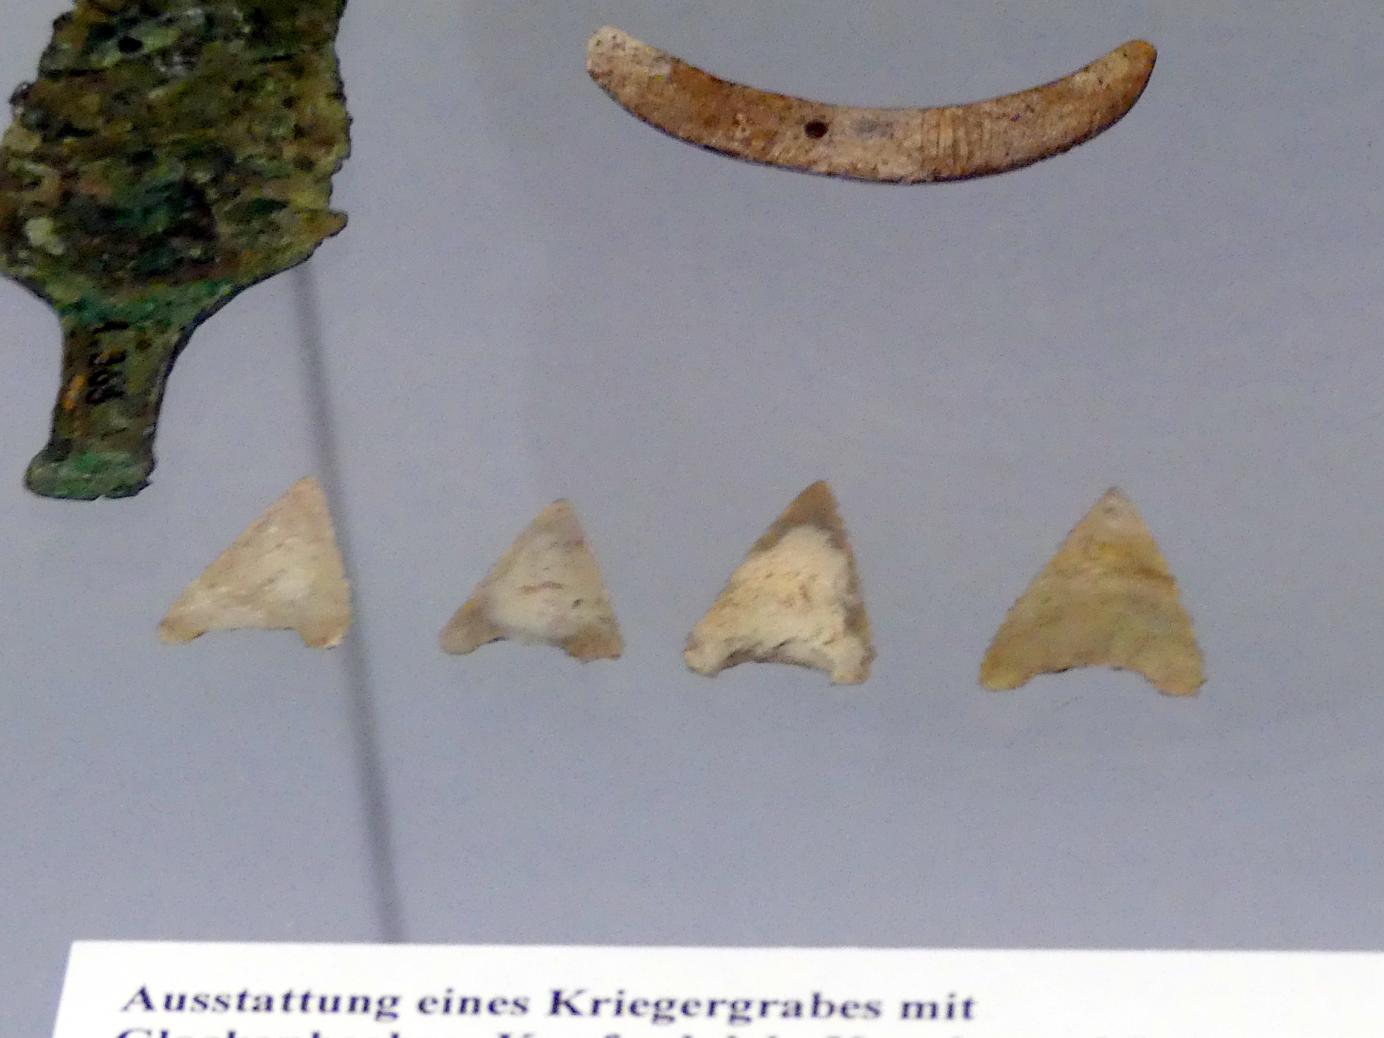 4 Pfeilspitzen, Endneolithikum, 2800 - 1700 v. Chr., Bild 1/2